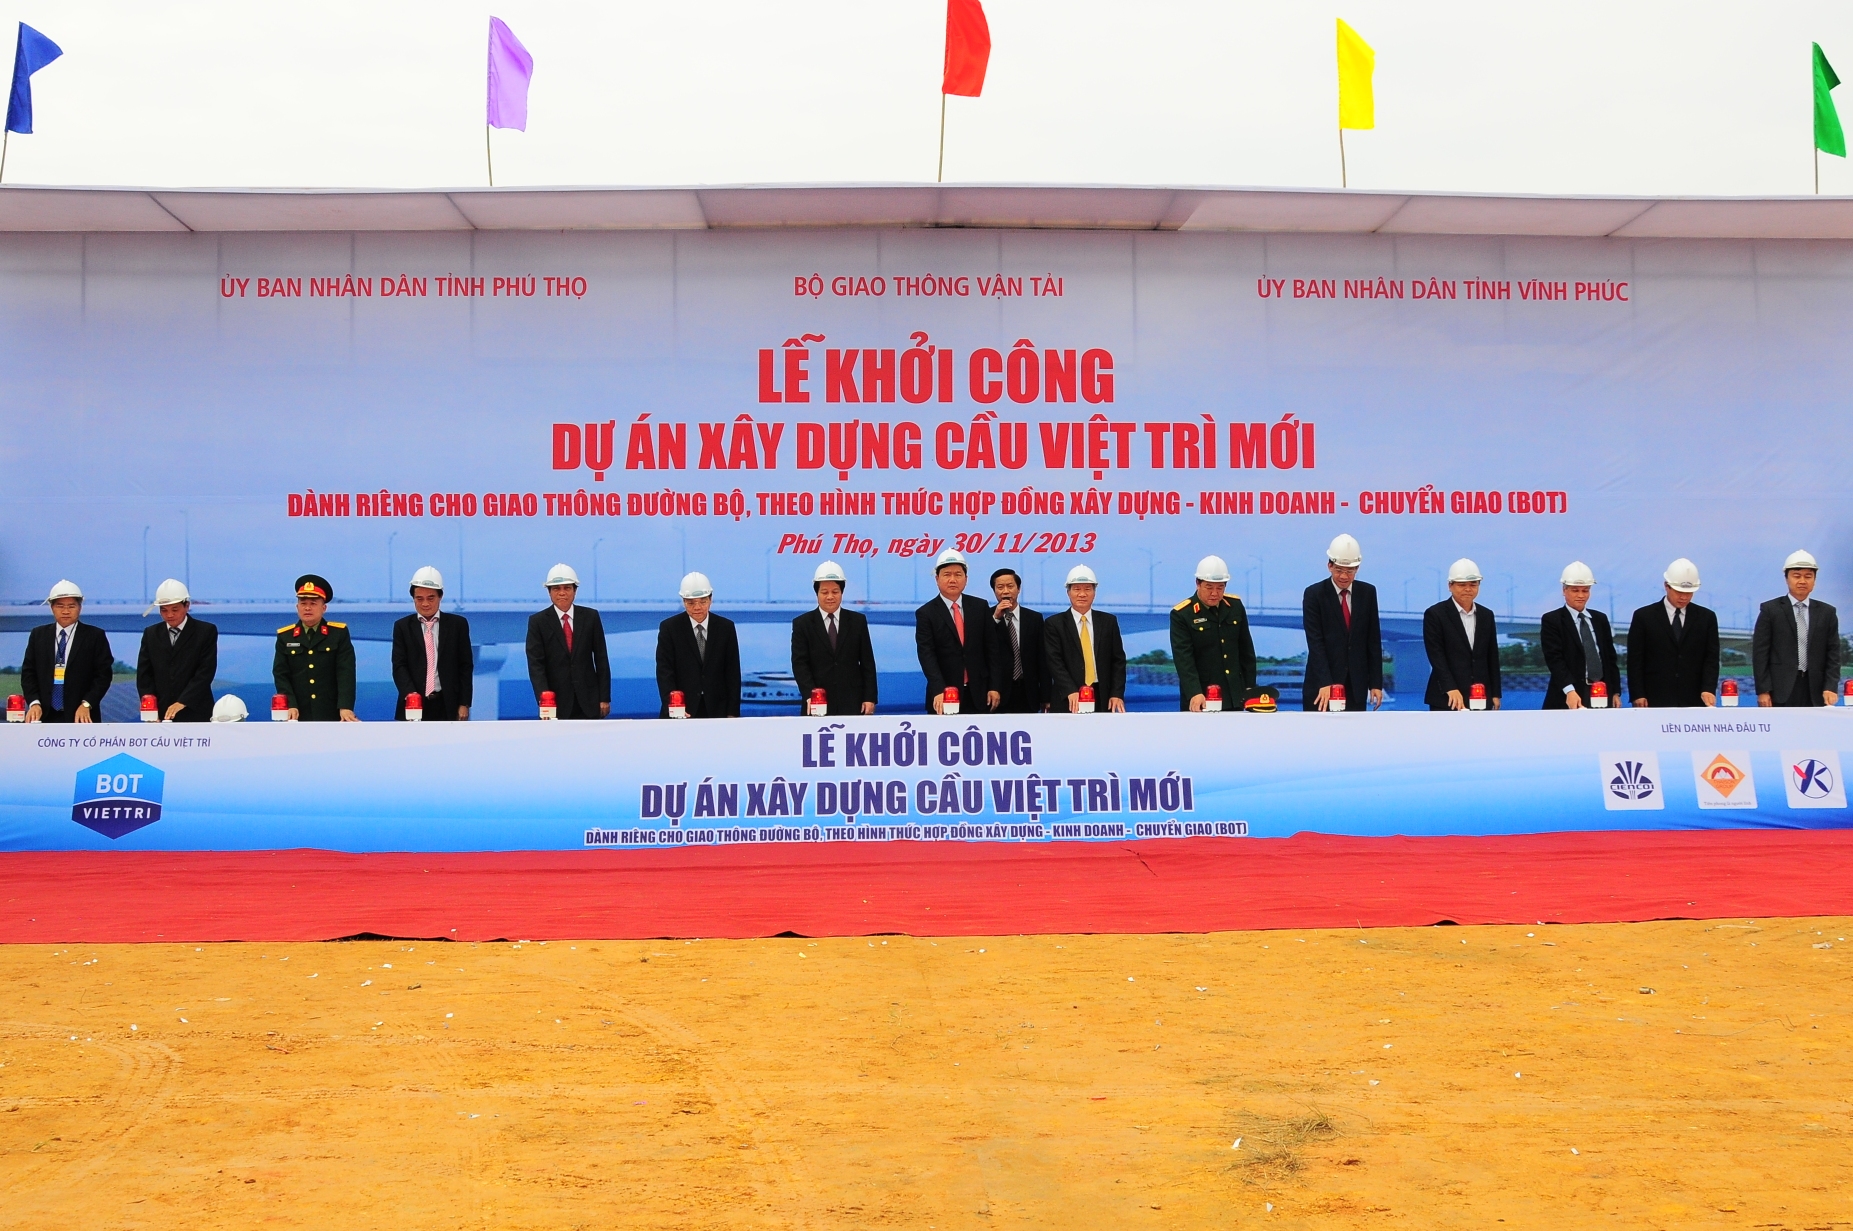 Khởi công xây dựng cầu Việt Trì mới dành riêng cho đường bộ